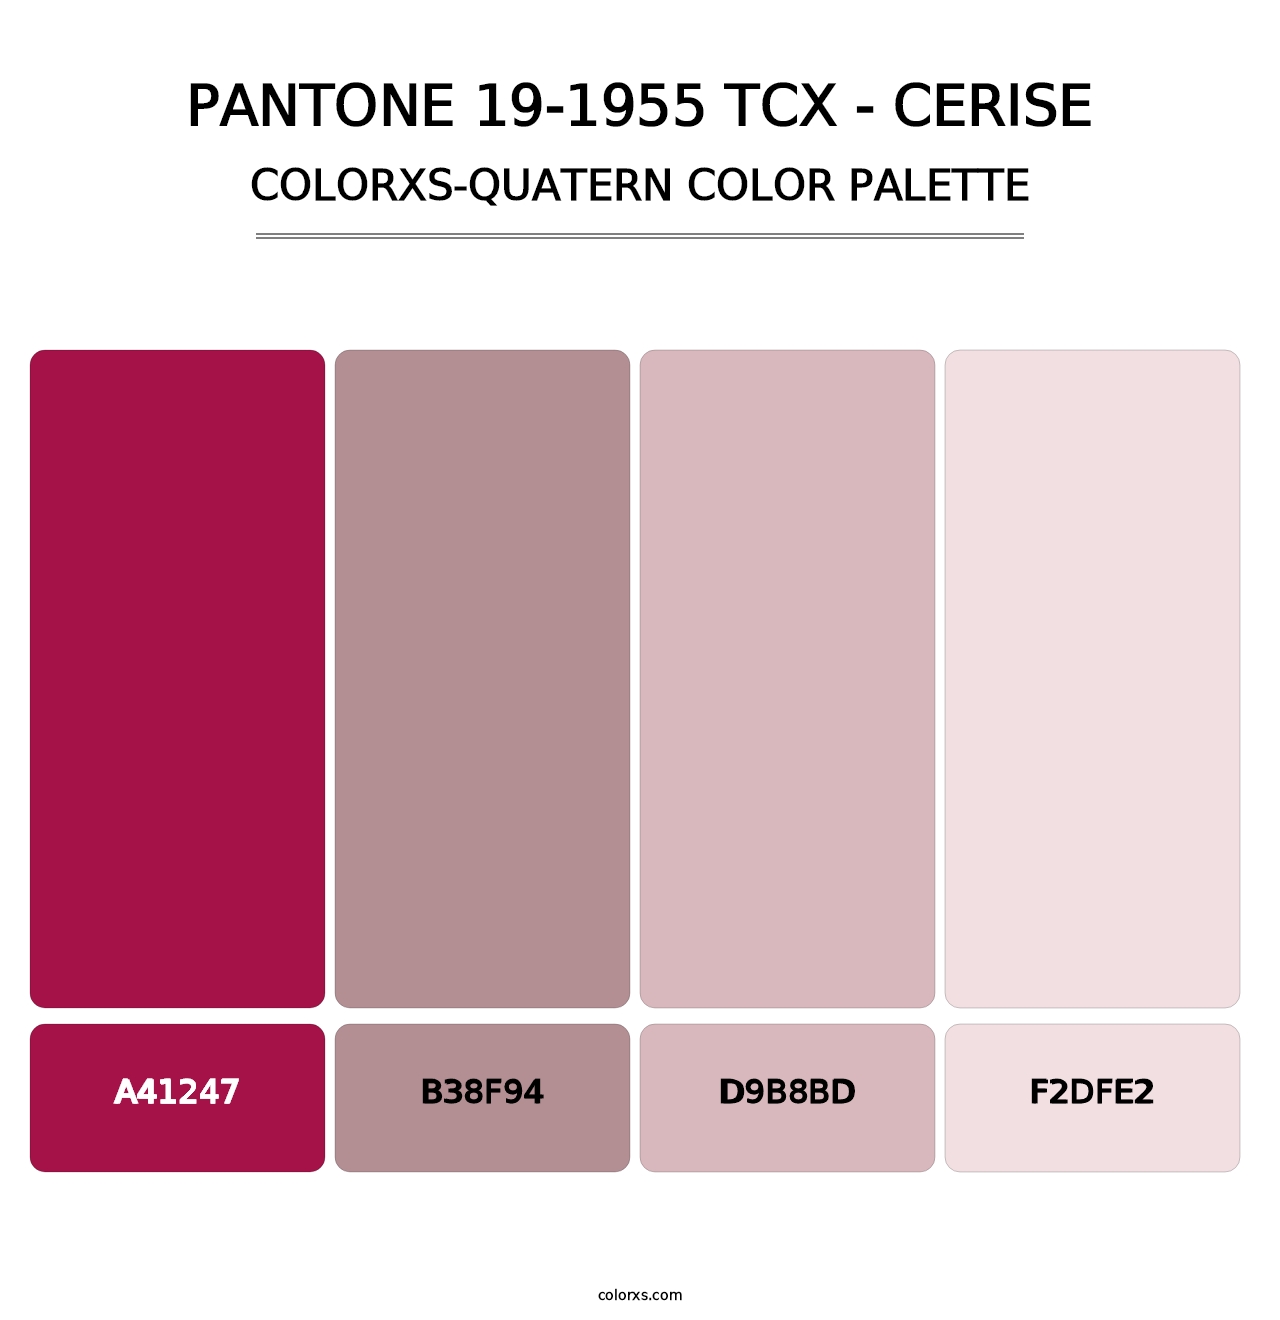 PANTONE 19-1955 TCX - Cerise - Colorxs Quatern Palette